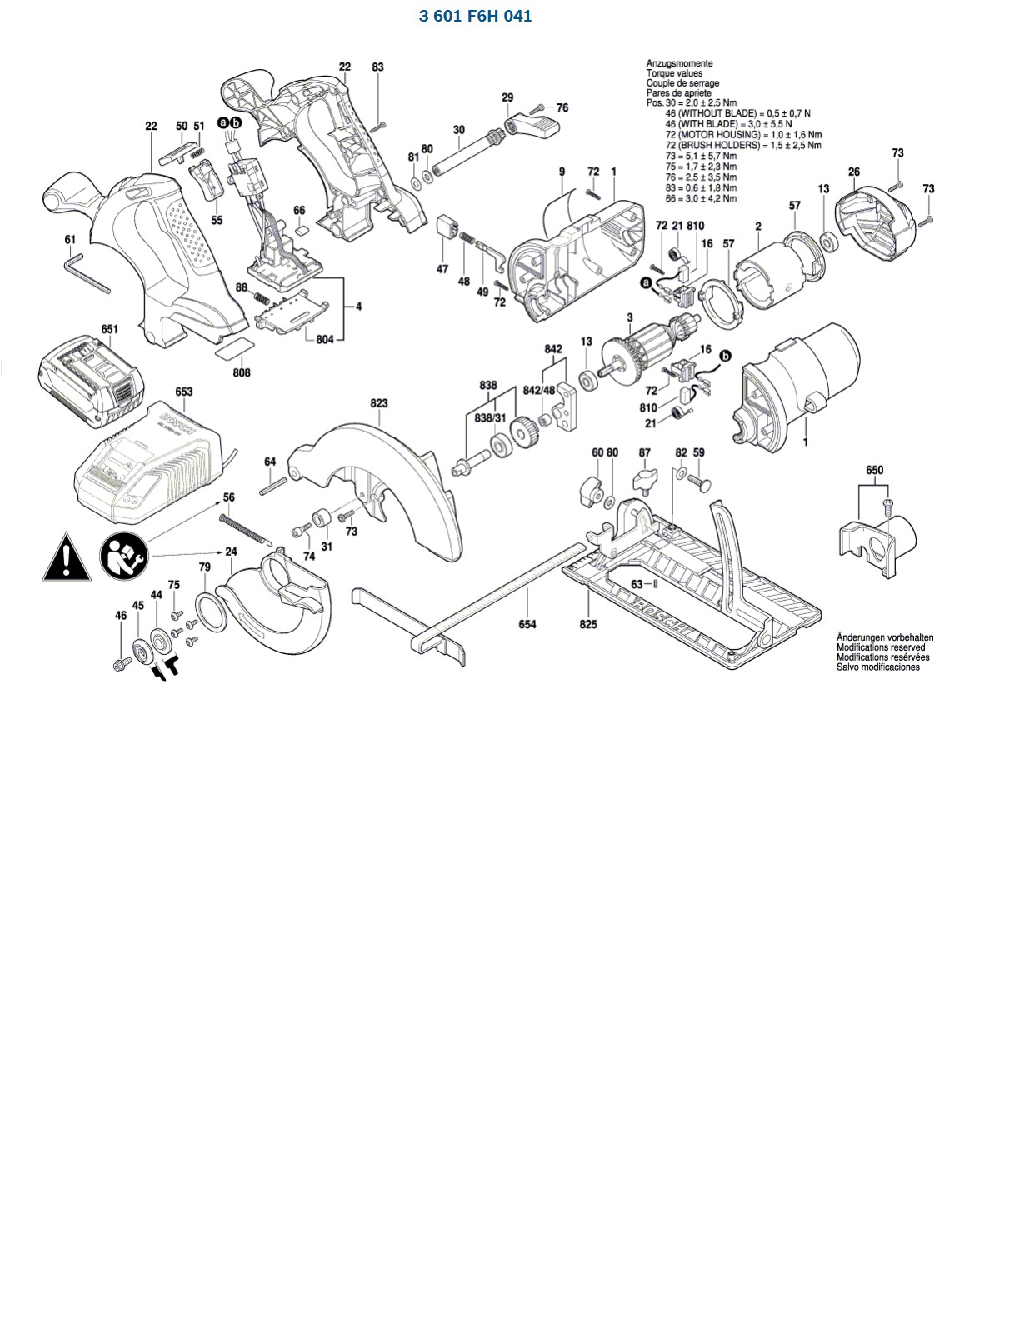 Bosch 3601F6H041 Diagram 1